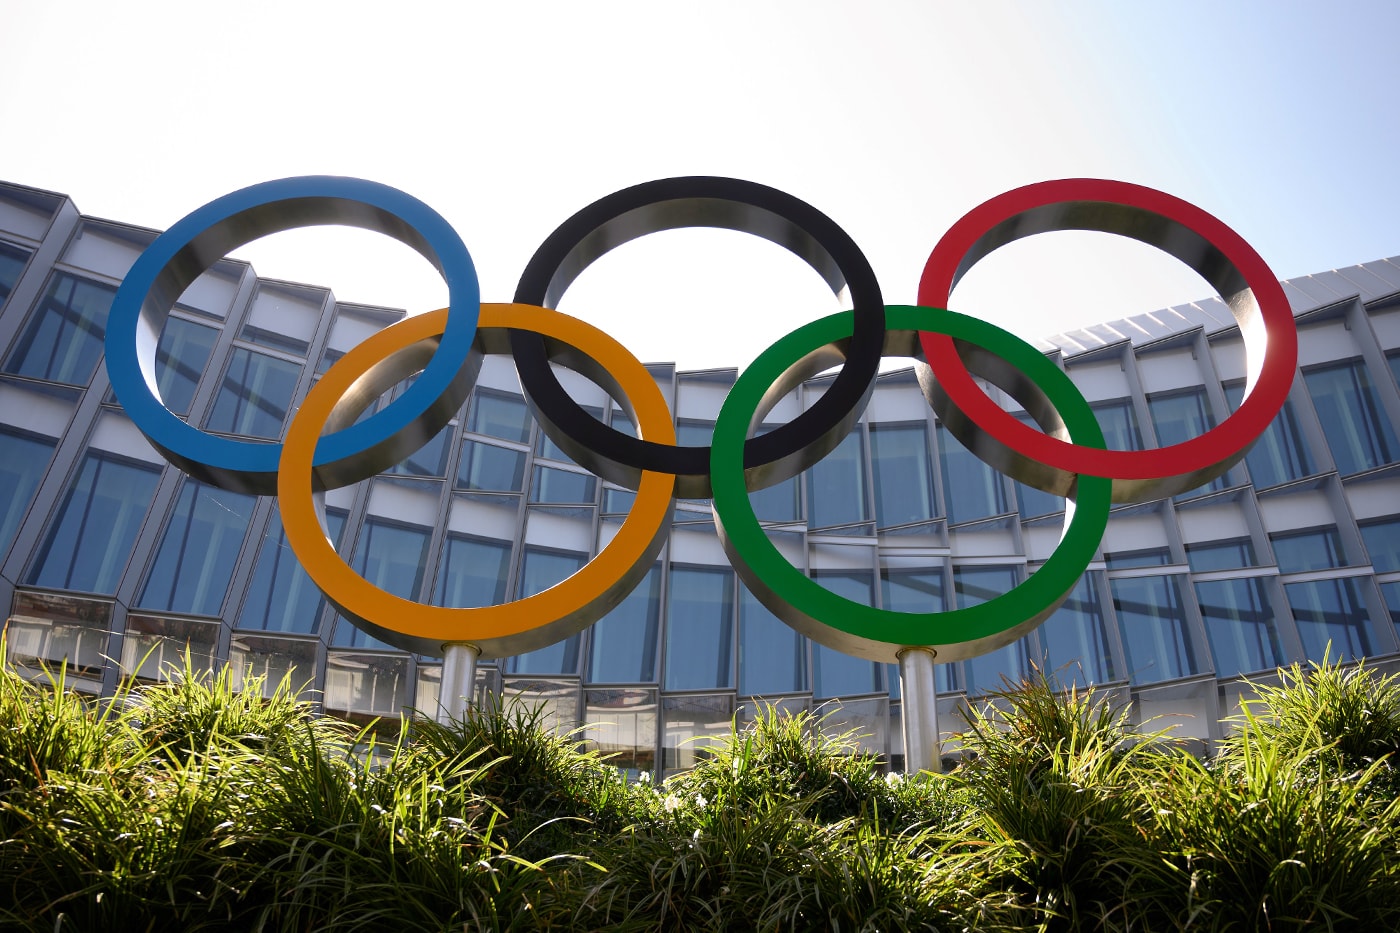 IOC 의원, “아마겟돈 오지 않는 한 ‘도쿄 올림픽’ 개최는 예정대로”, 딕 파운드, 